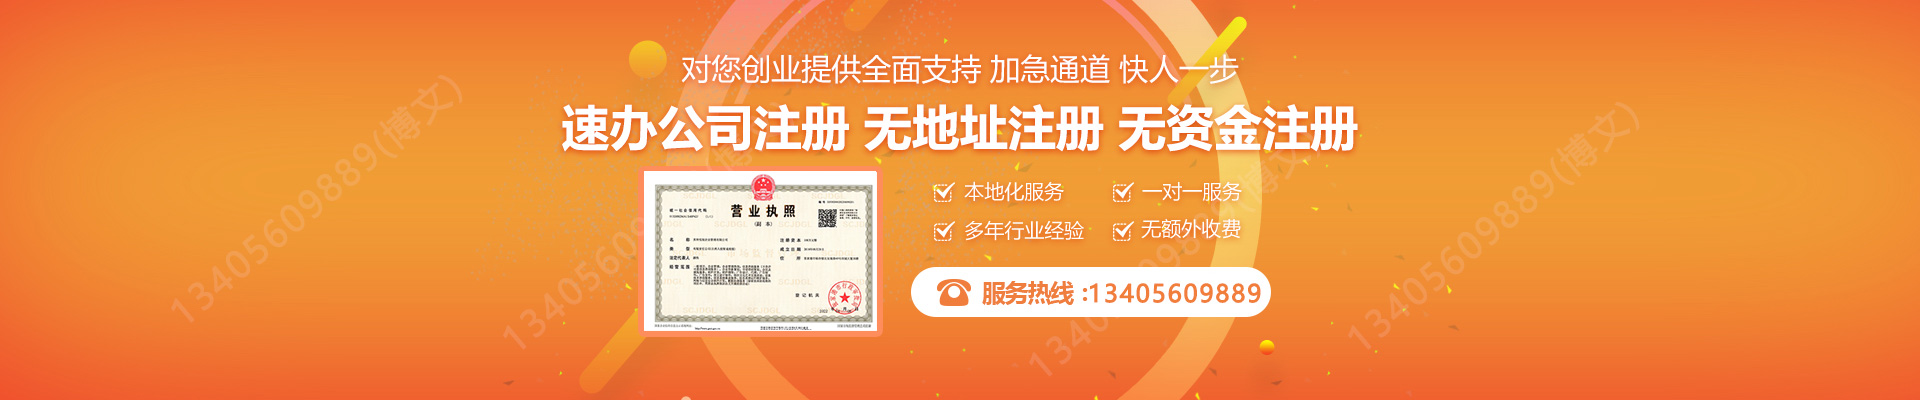 惠州注册公司网